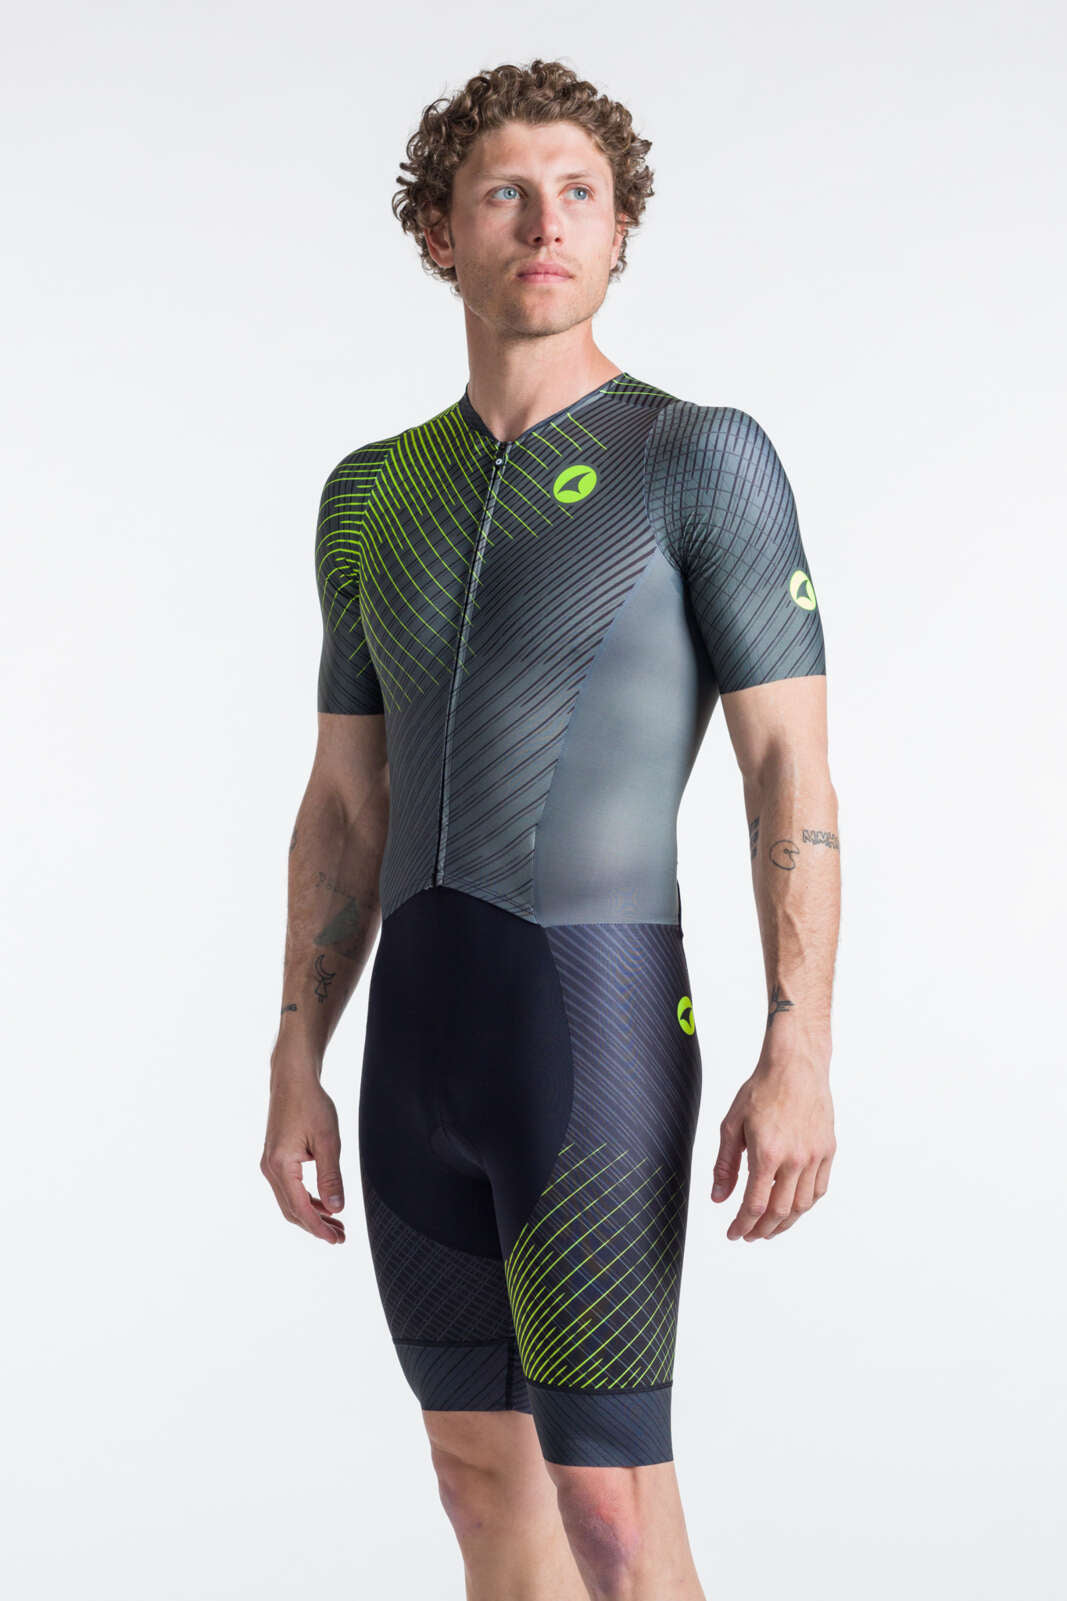 Men's Triathlon Suit - Black Short Sleeve Front View